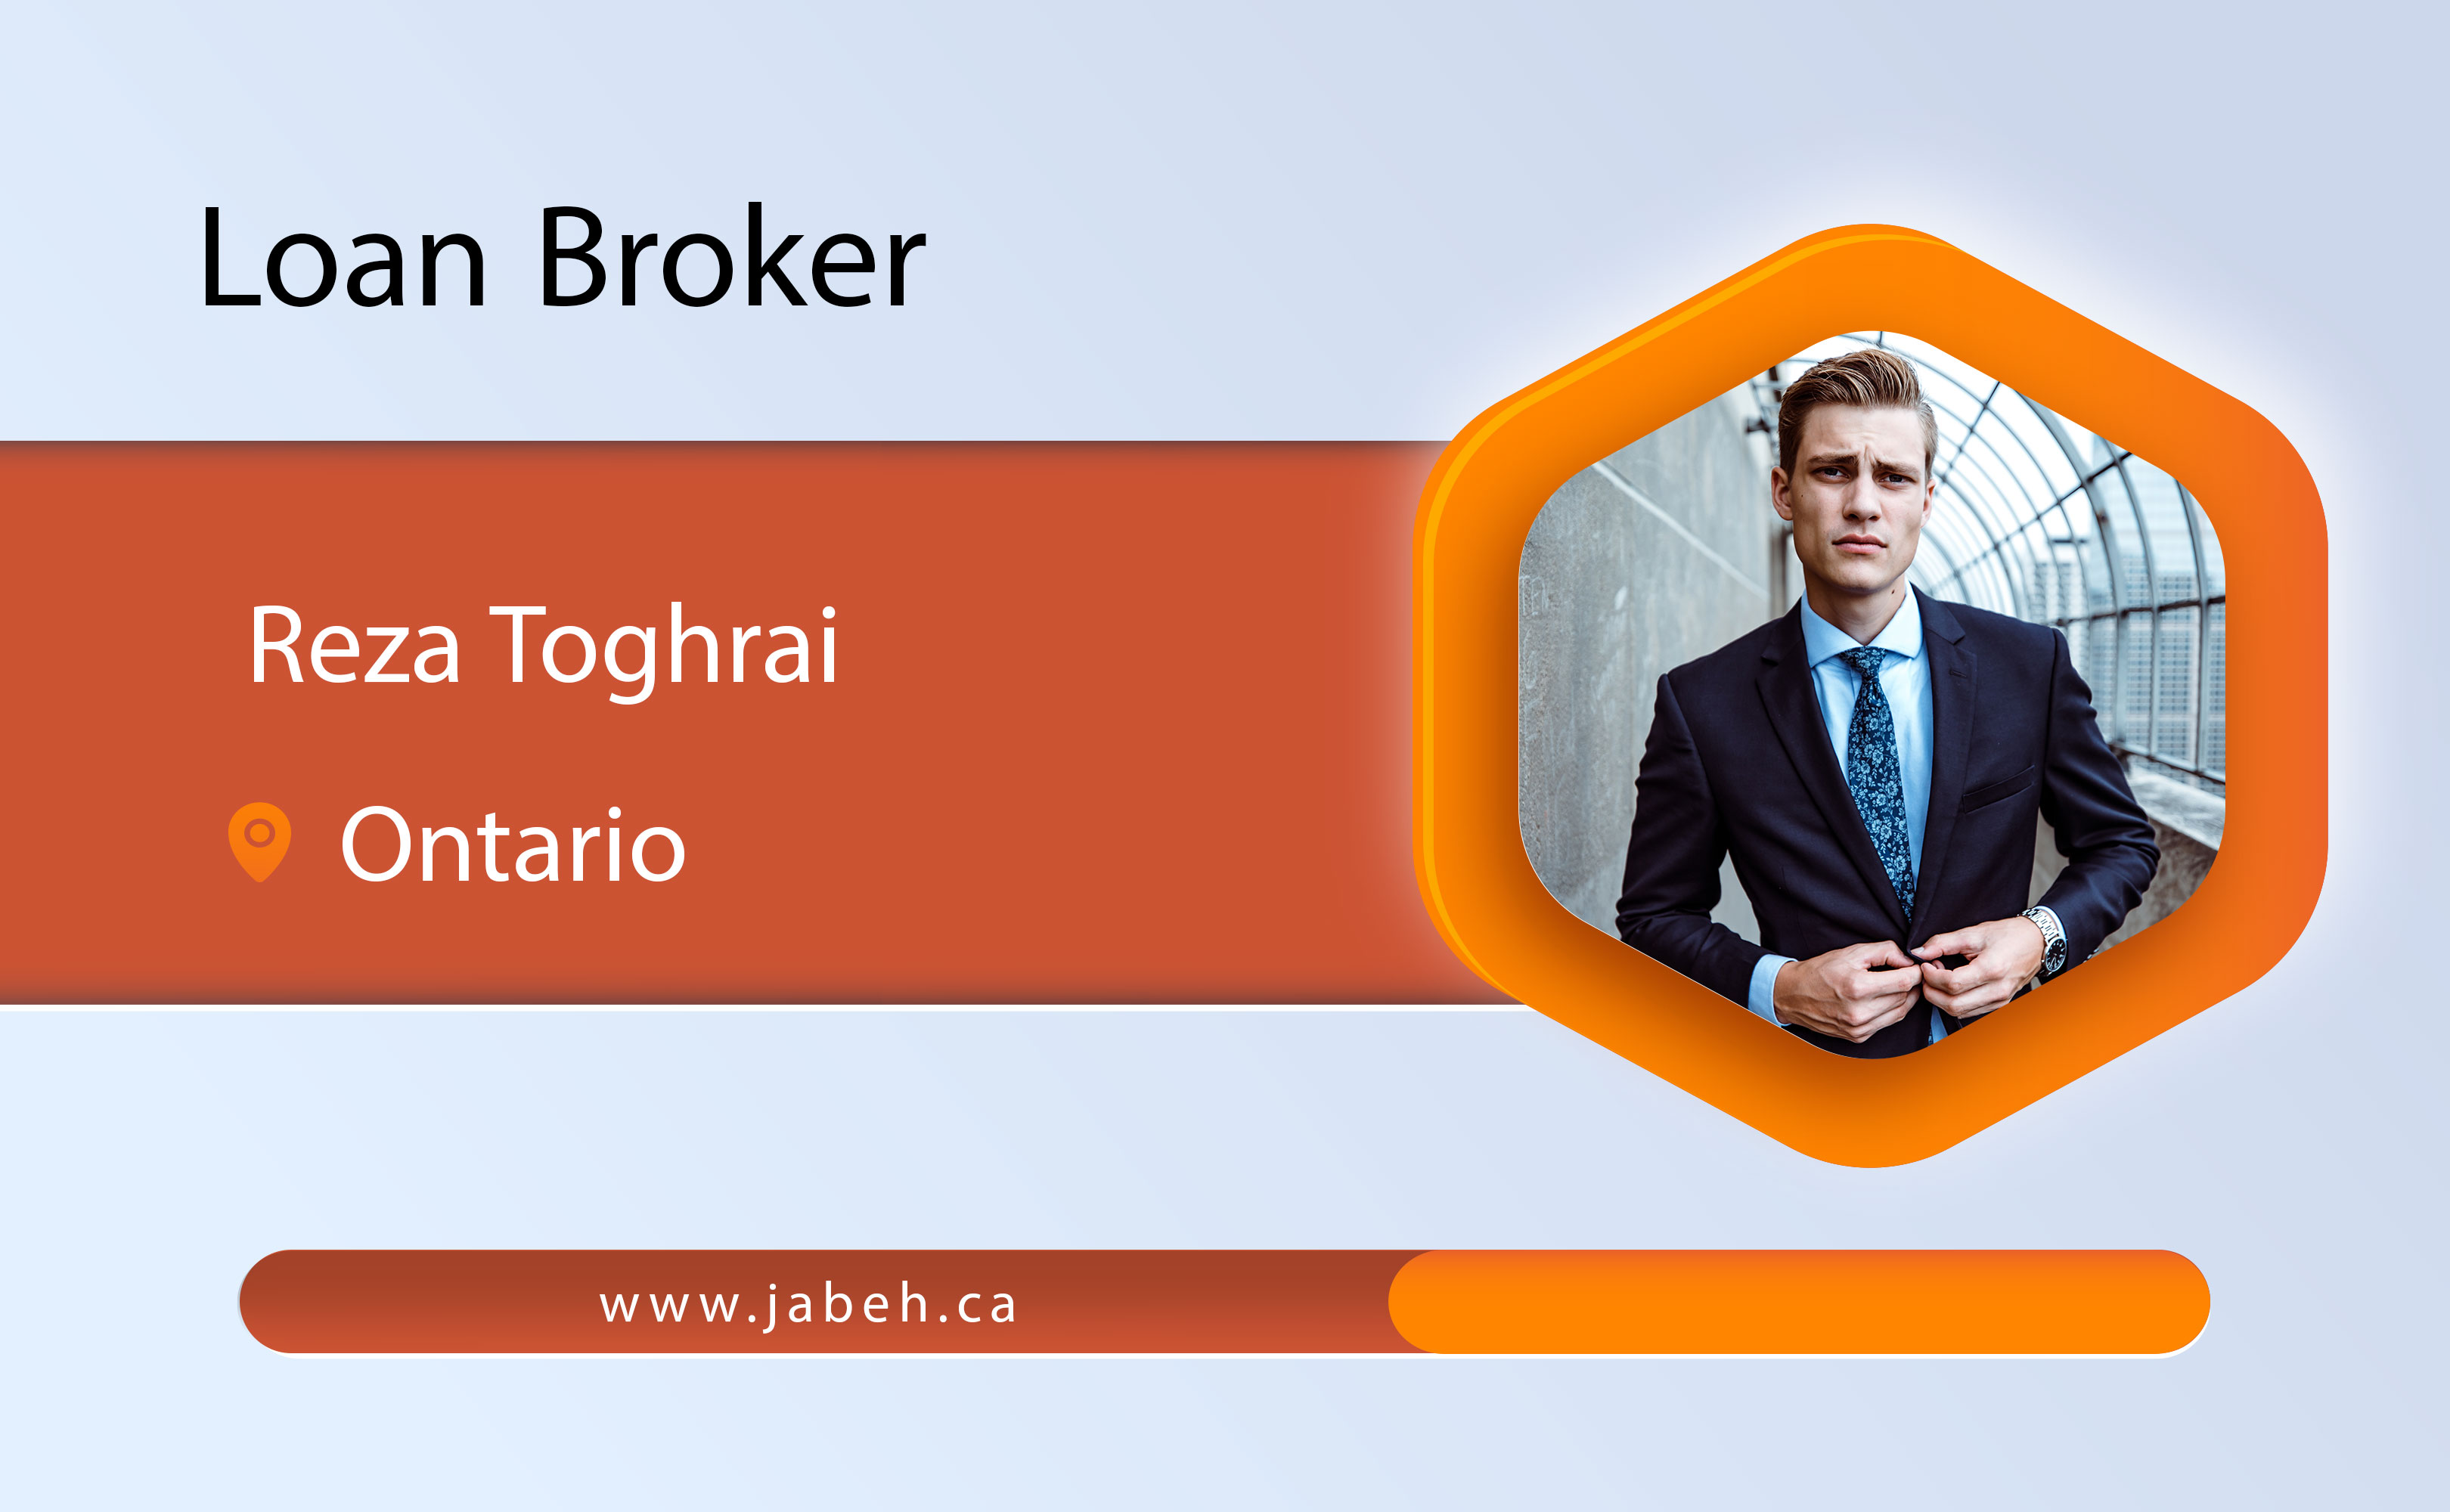 Iranian loan broker Reza Taghraei in Ontario